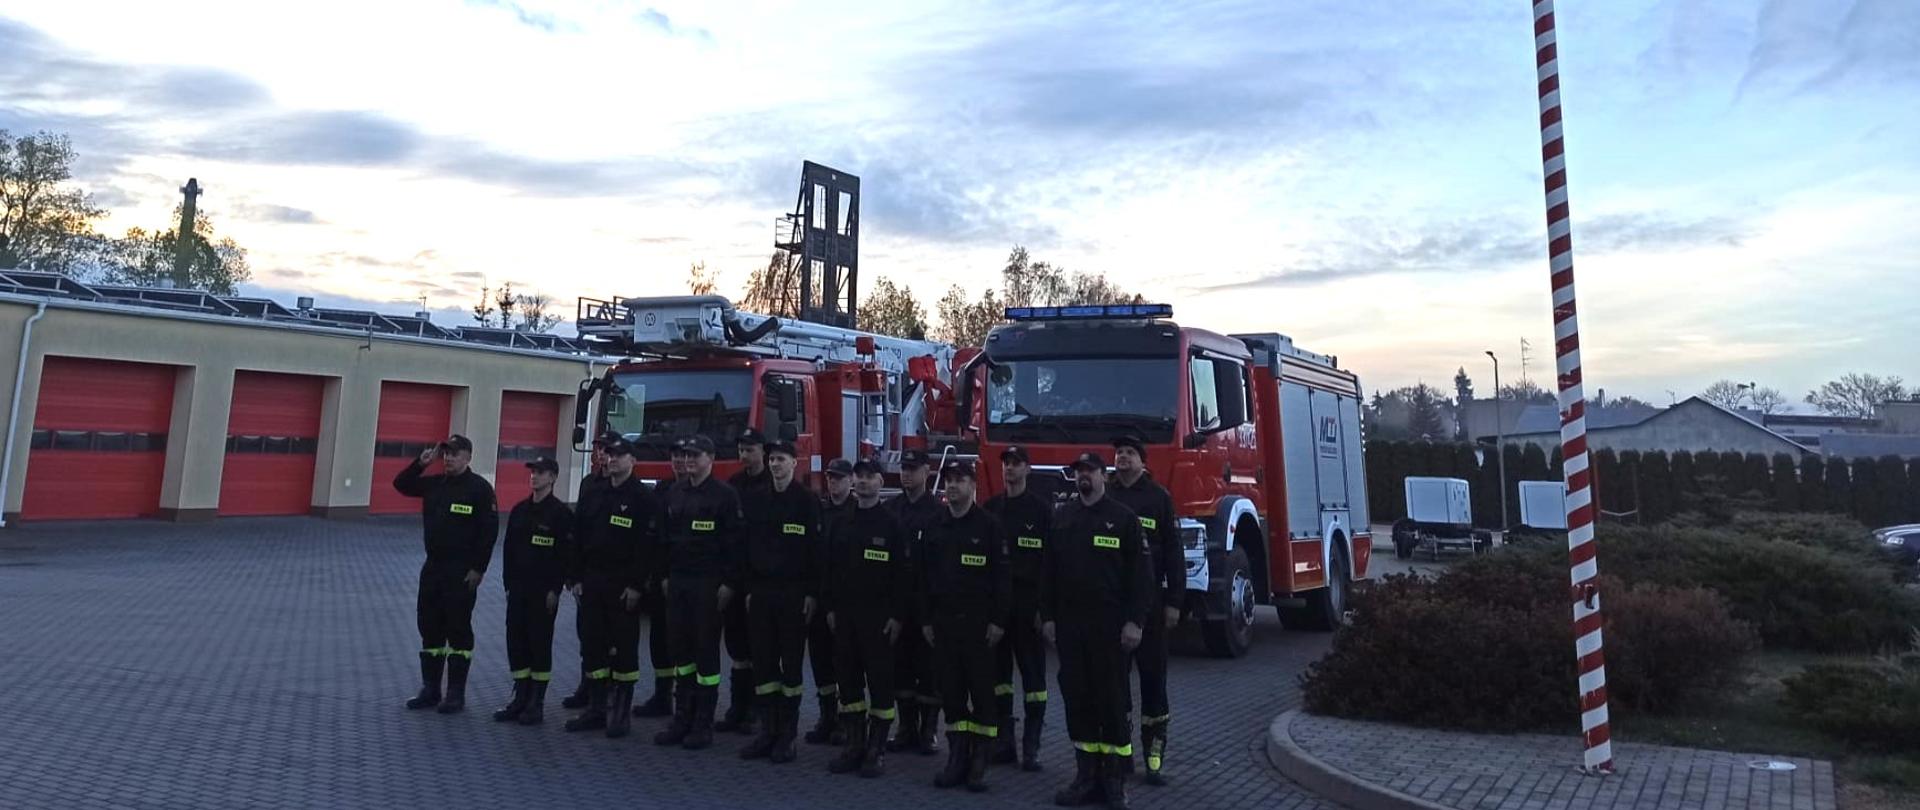 Zdjęcie przedstawia strażaków z JRG w Pruszczu Gdańskim stojących w dwuszeregu podczas uroczystej zmiany służby na tle dwóch samochodów strażackich, obok masztu flagowego z podniesioną flagą państwową.